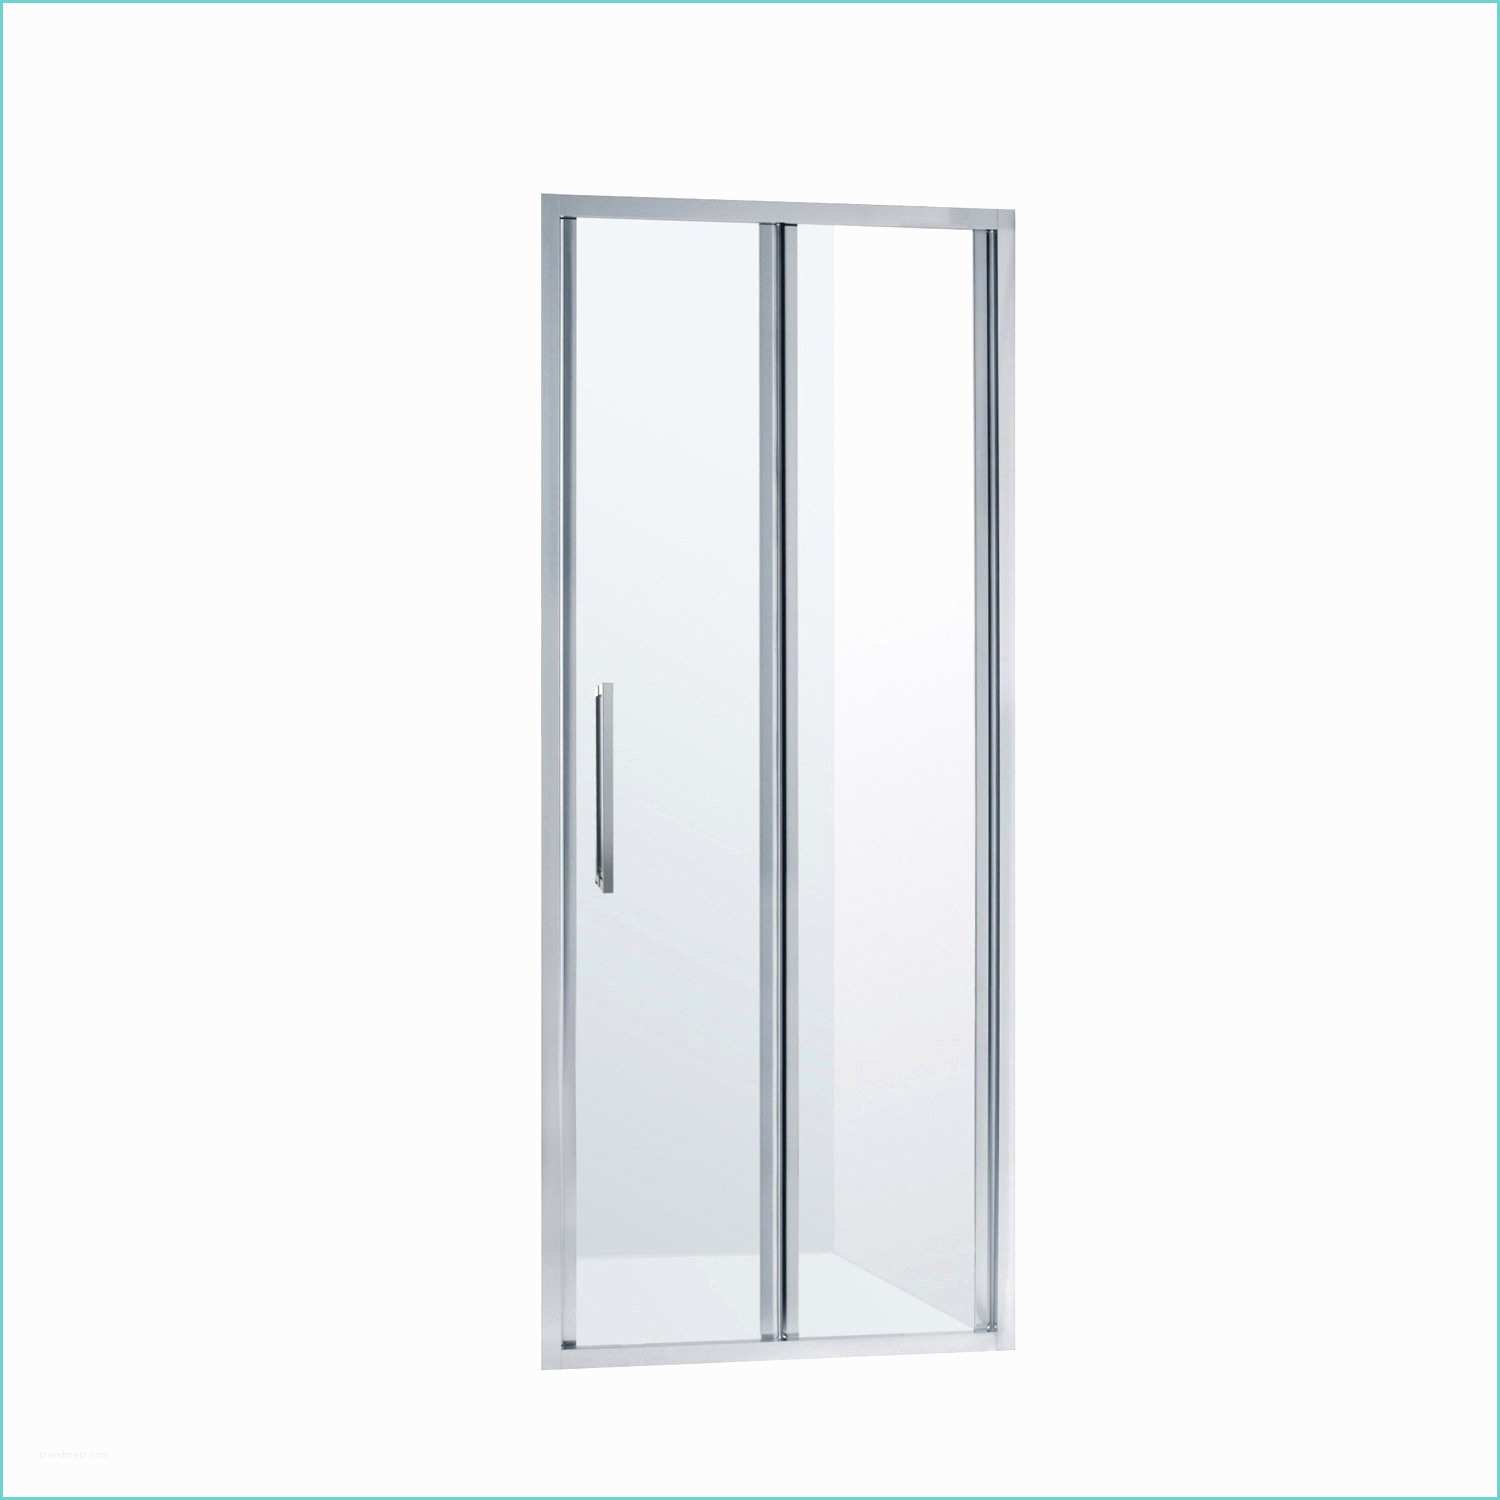 Леруа мерлен дверь для ванны. Панель Sensea dado 80x185 см. Sensea Nerea 70х185 см. Душевая дверь Sensea Essential 100х185 см цвет хром. Sensea Essential душевая дверь 80×185.